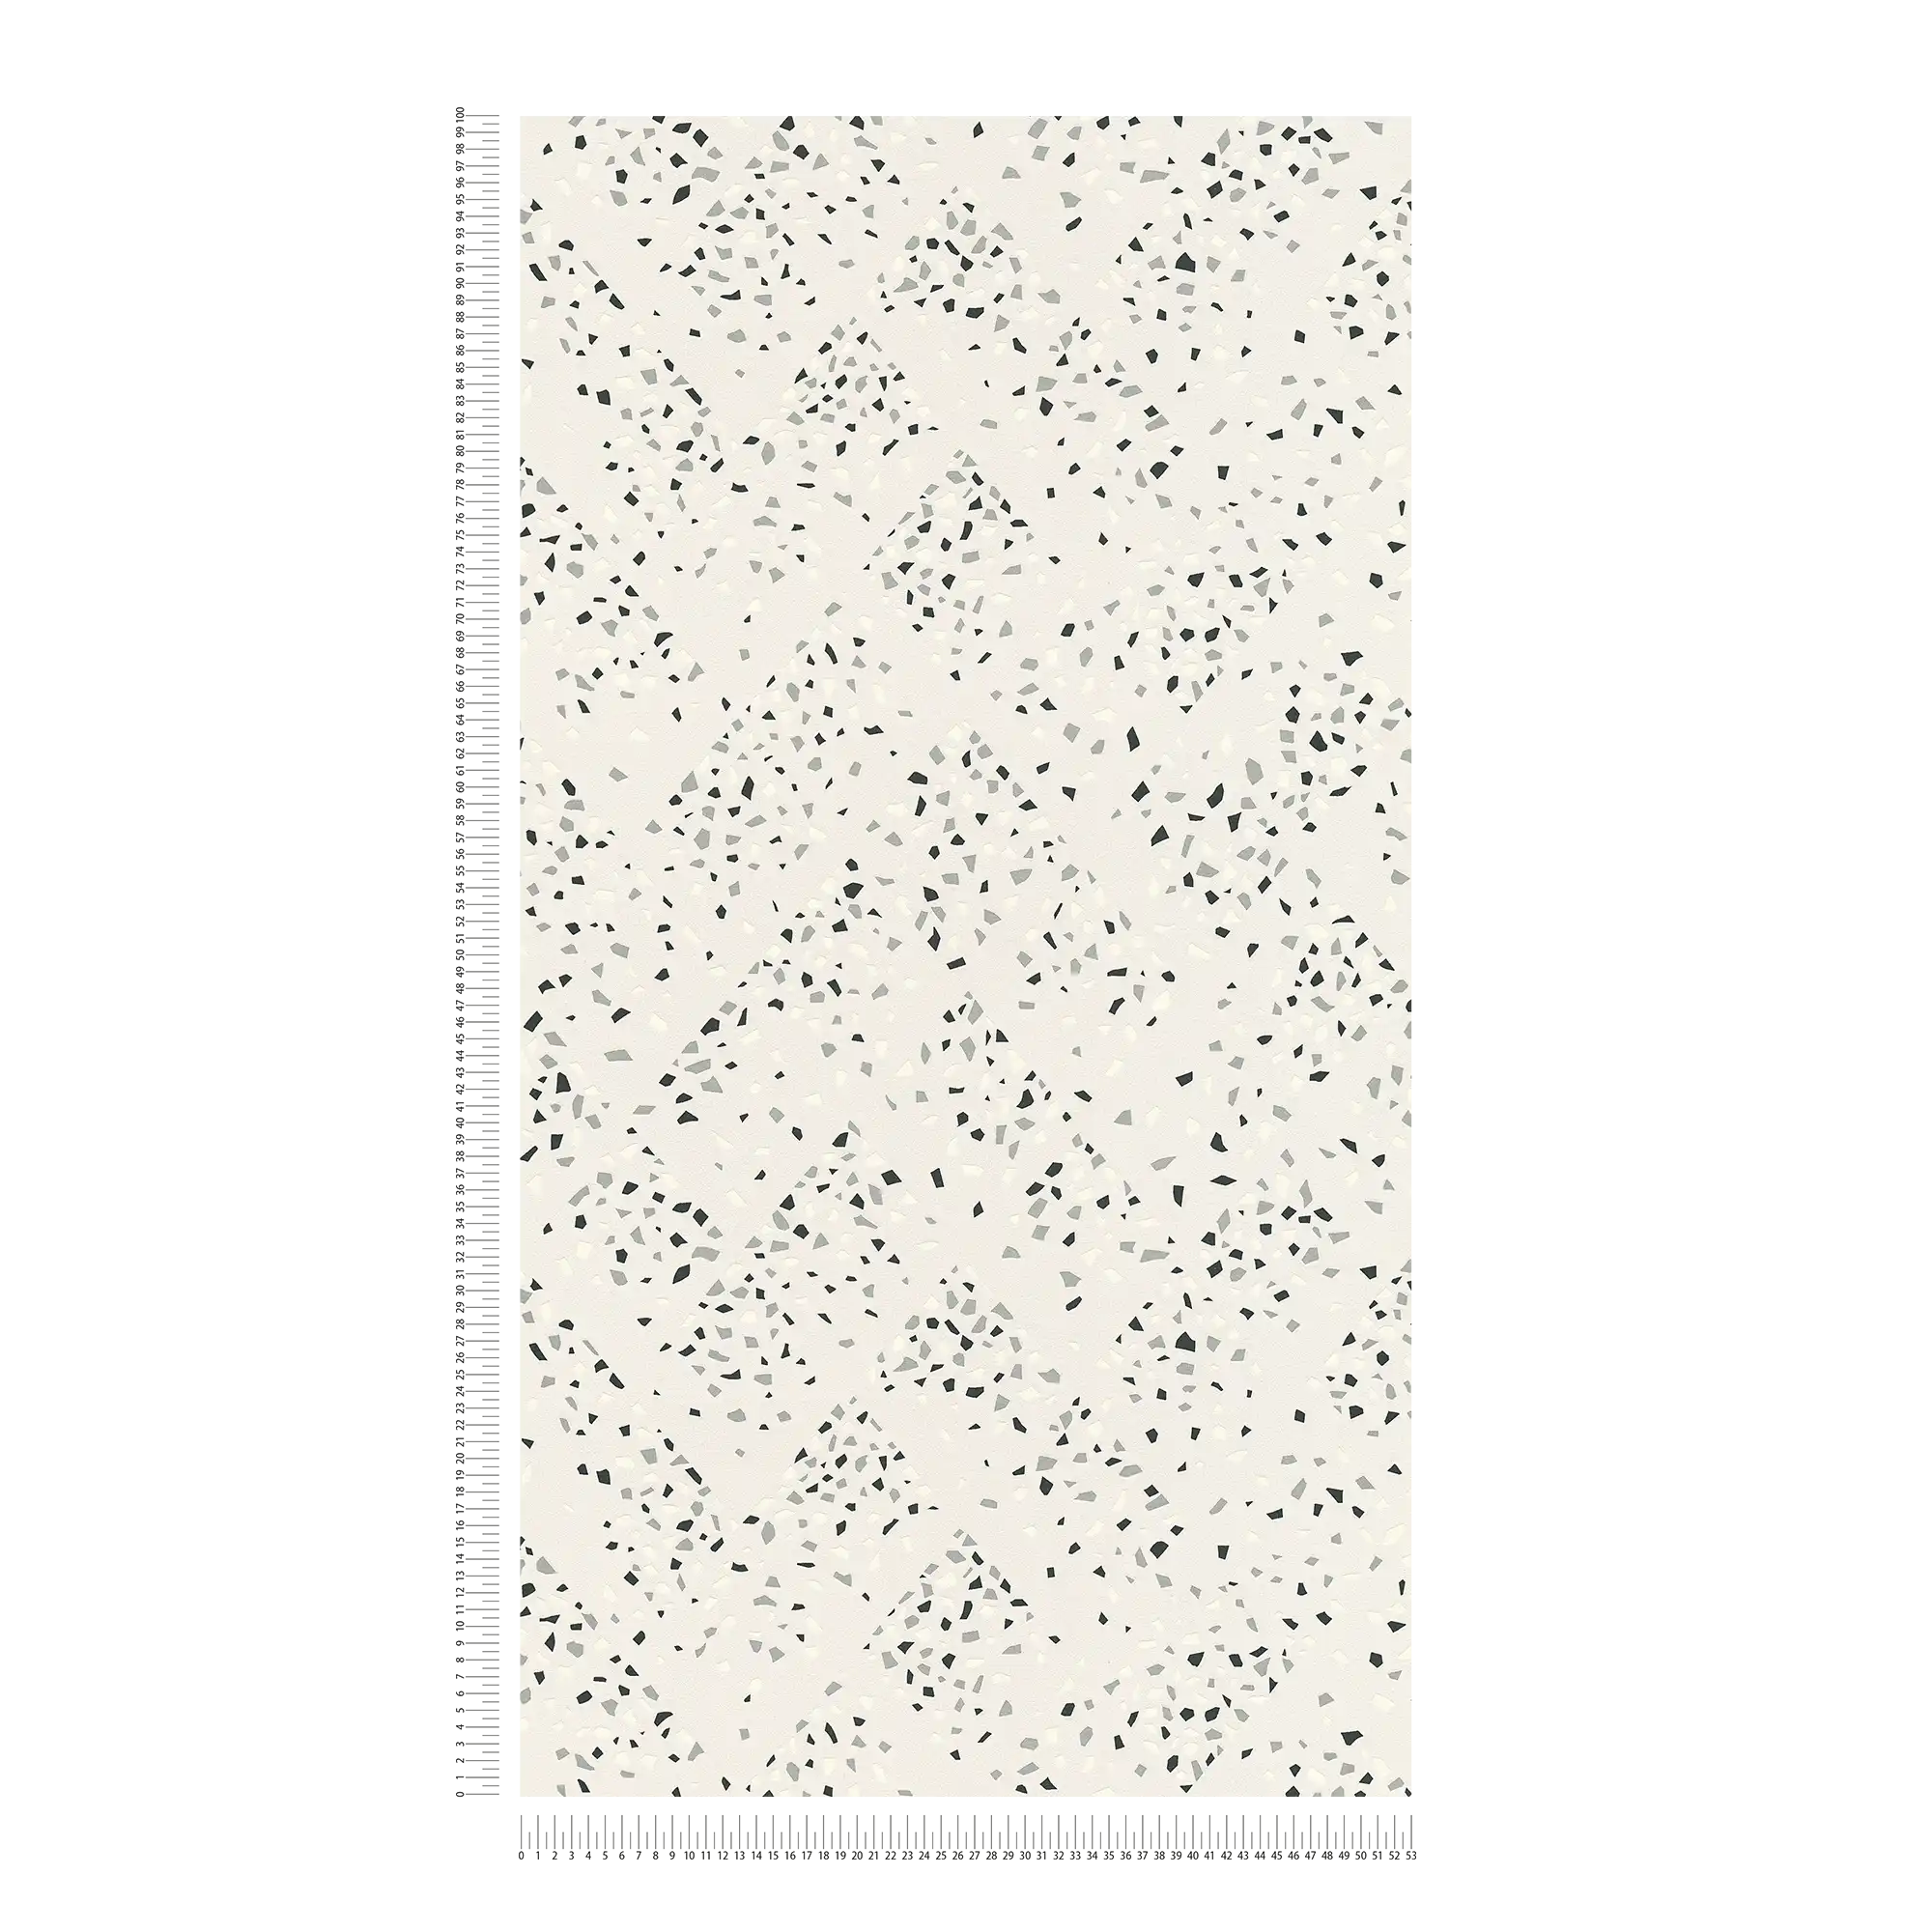             wallpaper terrazzo pattern & metallic effect - white, black, silver
        